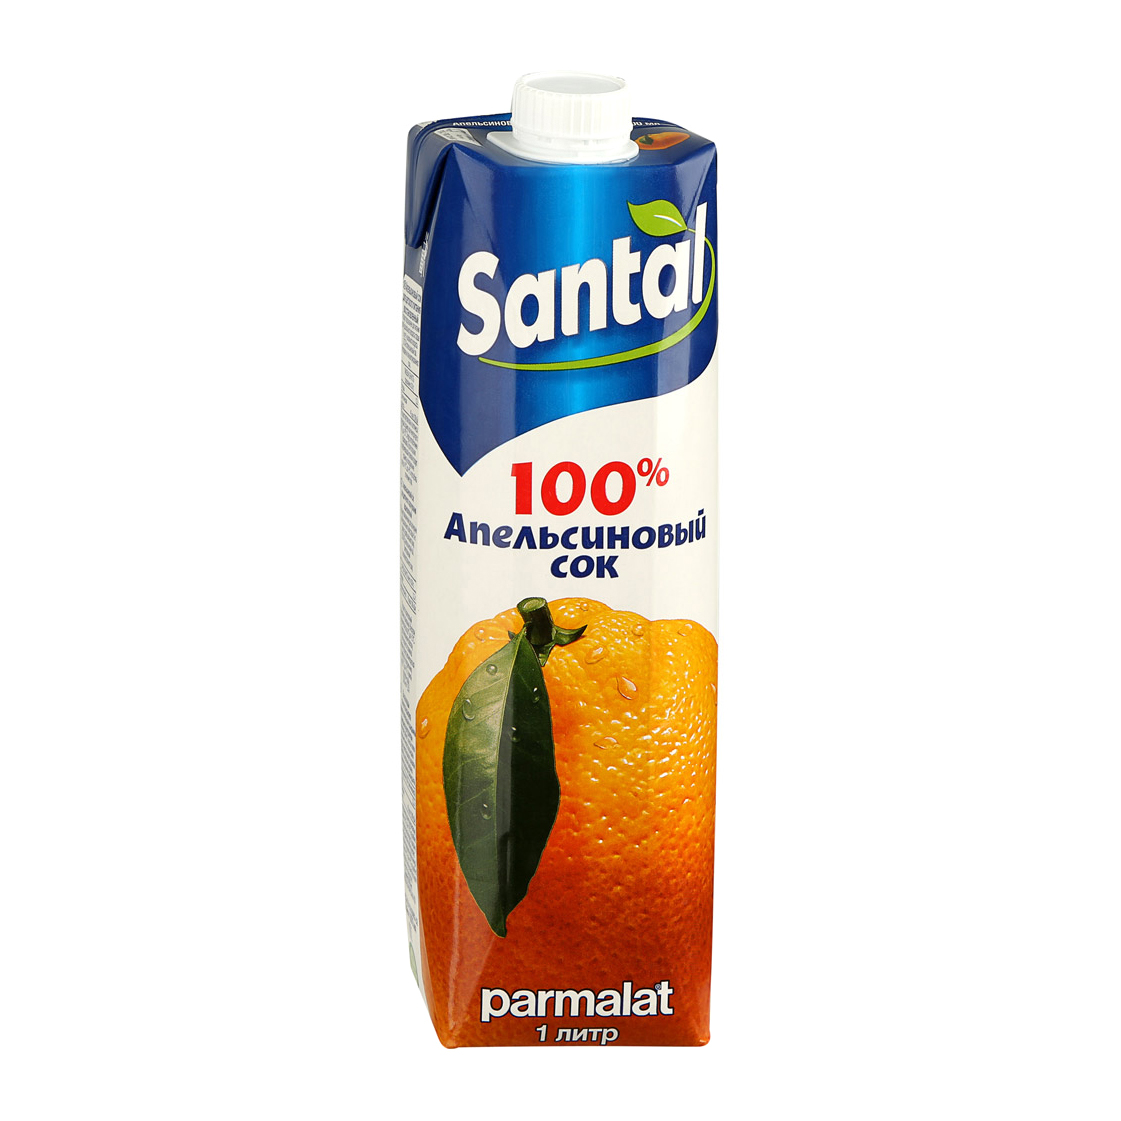 сок santal апельсиновый 100% 1 л Сок Santal апельсиновый 100% 1 л